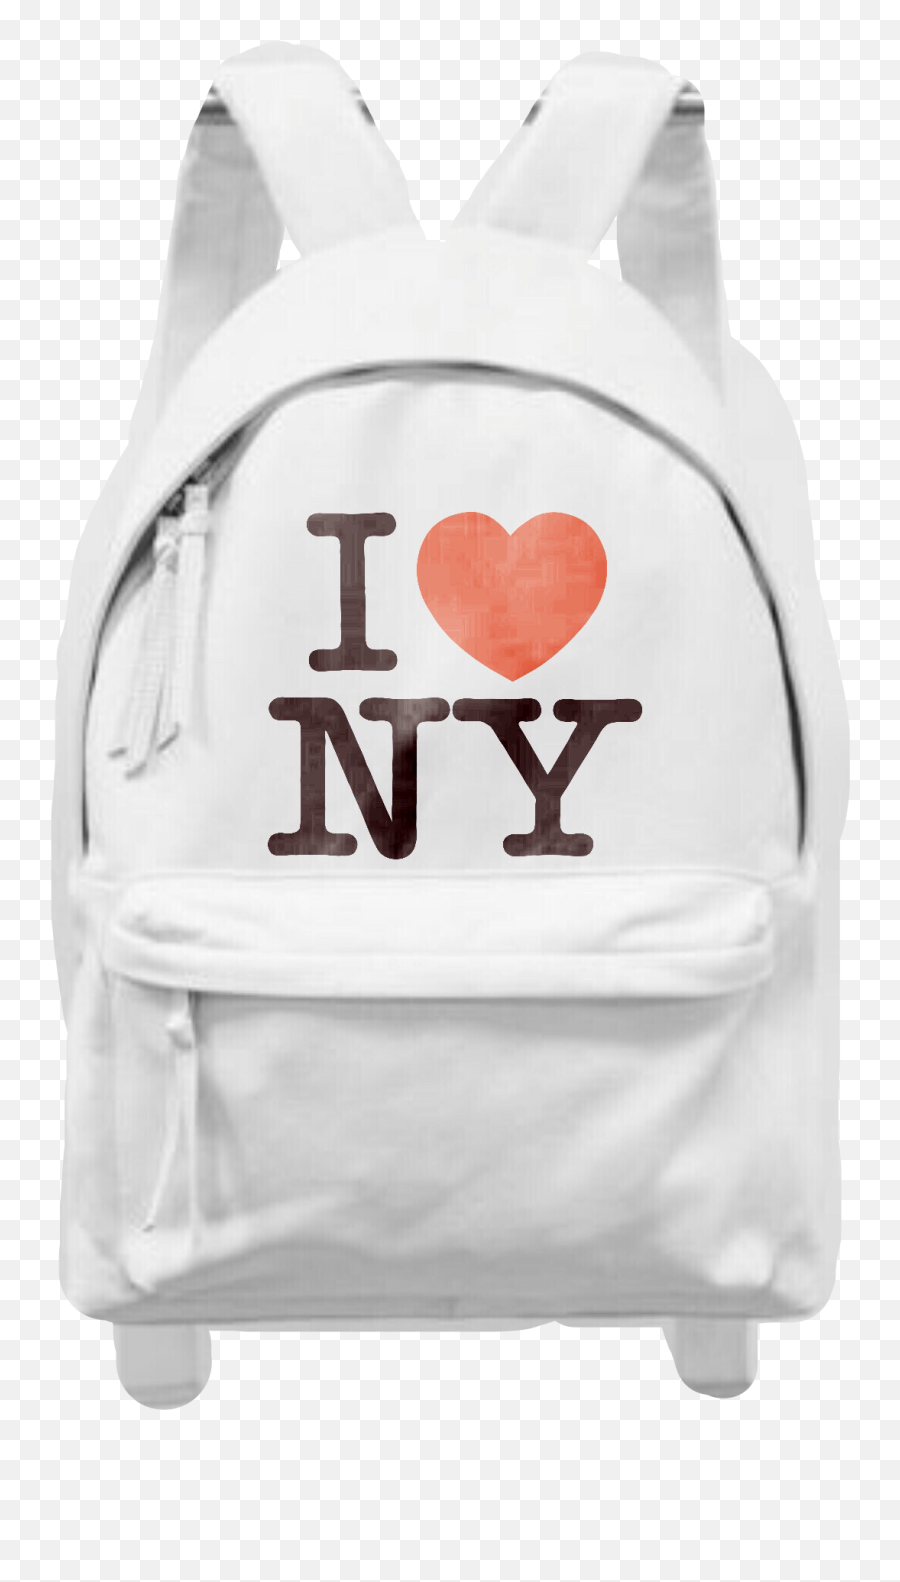 The Most Edited Backpacks Picsart Emoji,Jansport Emoticon Backpack